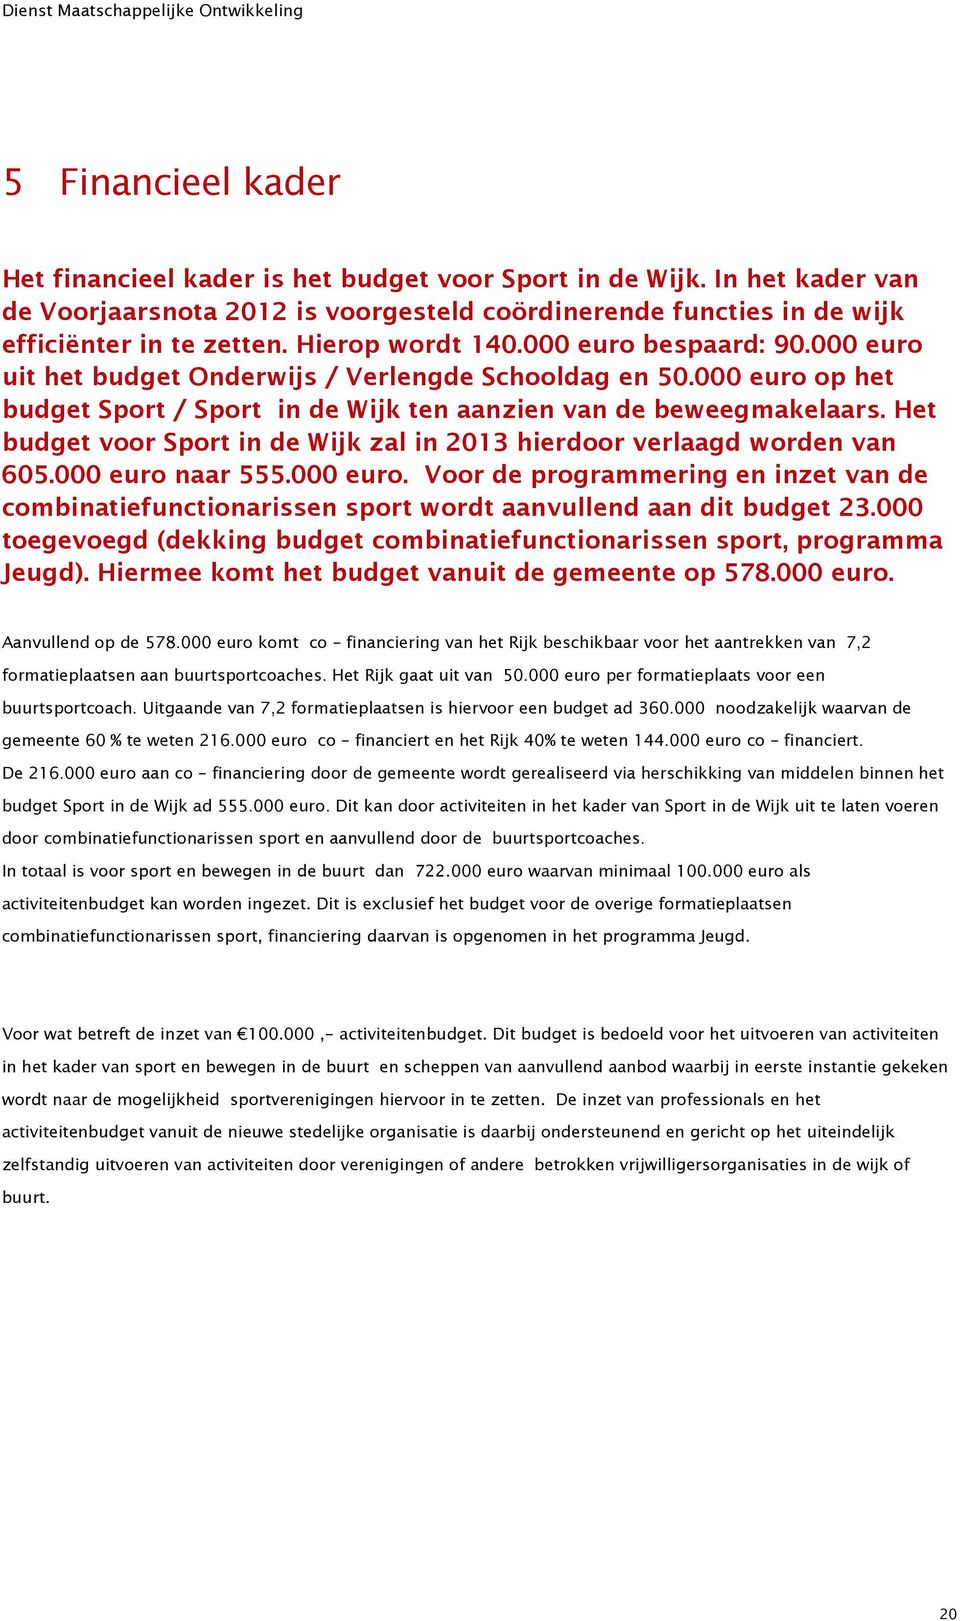 Het budget voor Sport in de Wijk zal in 2013 hierdoor verlaagd worden van 605.000 euro naar 555.000 euro. Voor de programmering en inzet van de combinatiefunctionarissen sport wordt aanvullend aan dit budget 23.